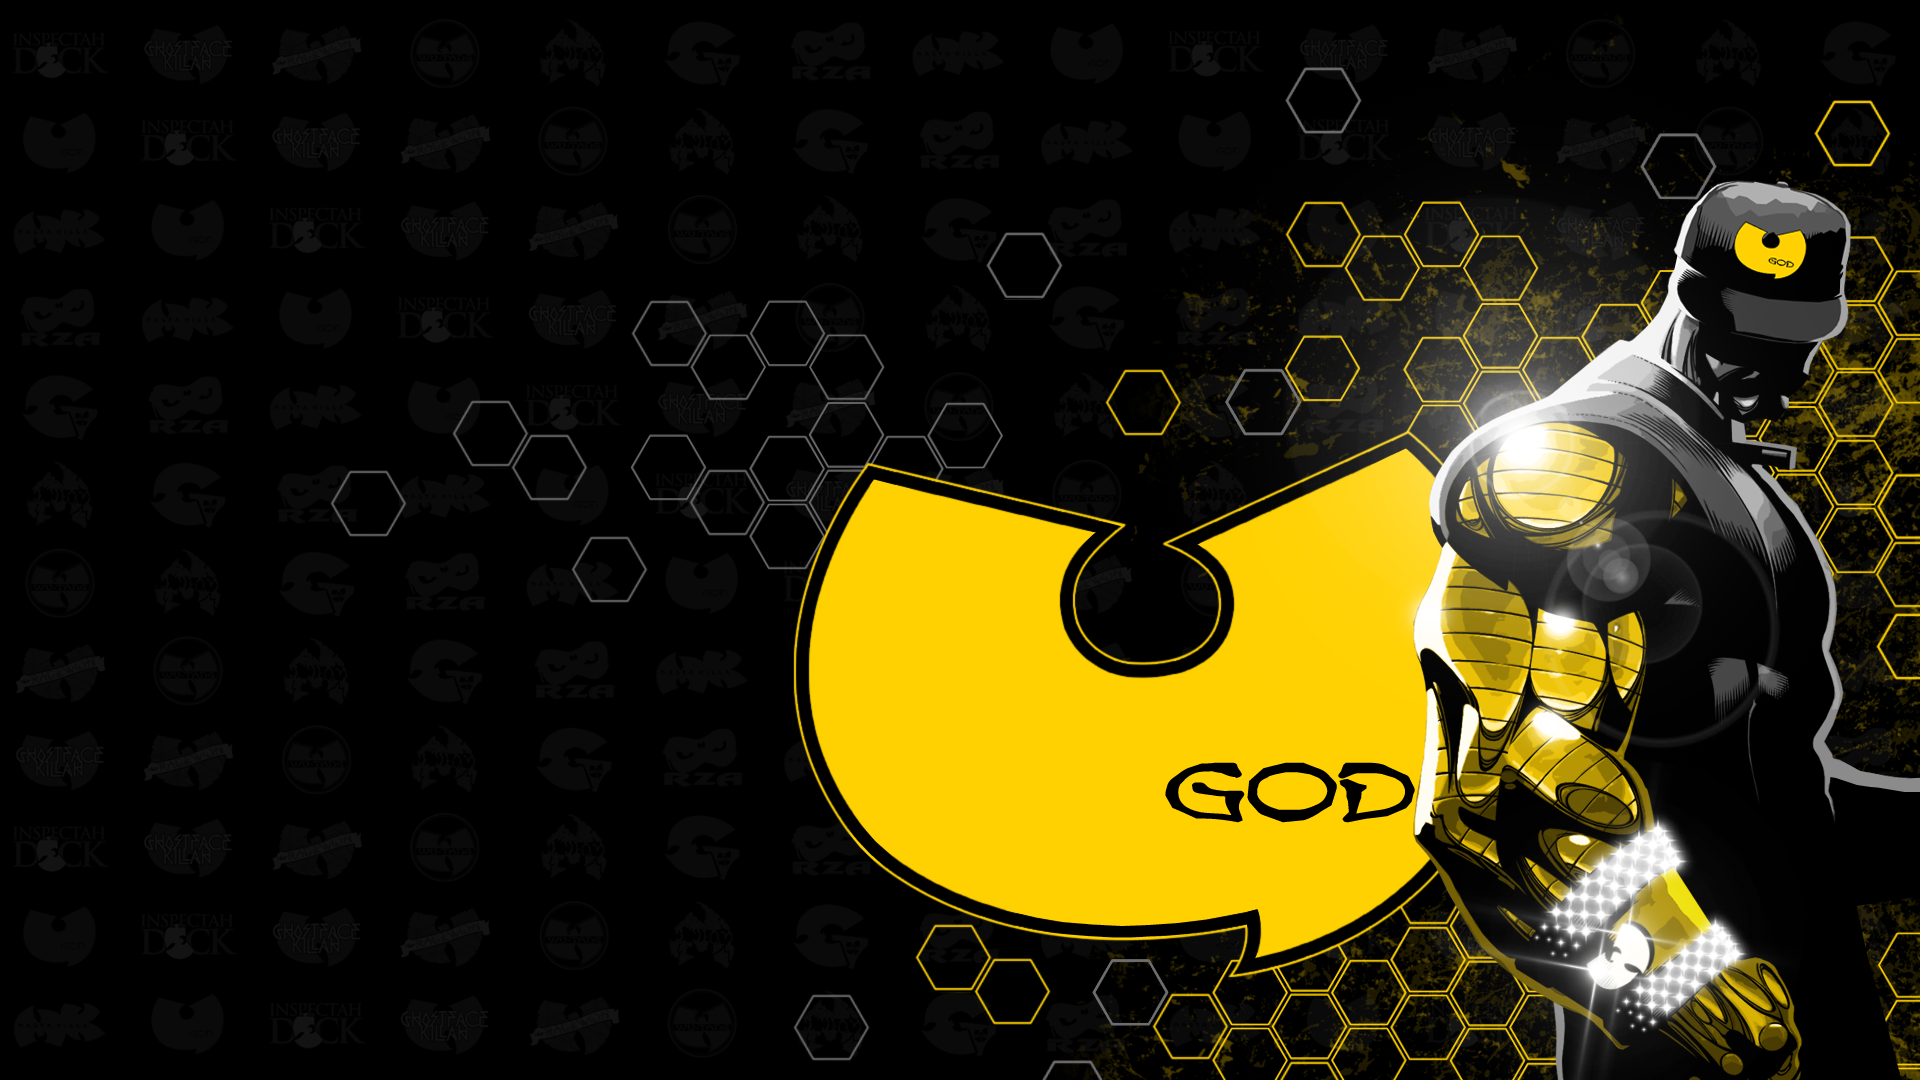 Wu-Tang Clan Logos: U-God as Golden Arms by uLtRaMa6nEt1cART on ...